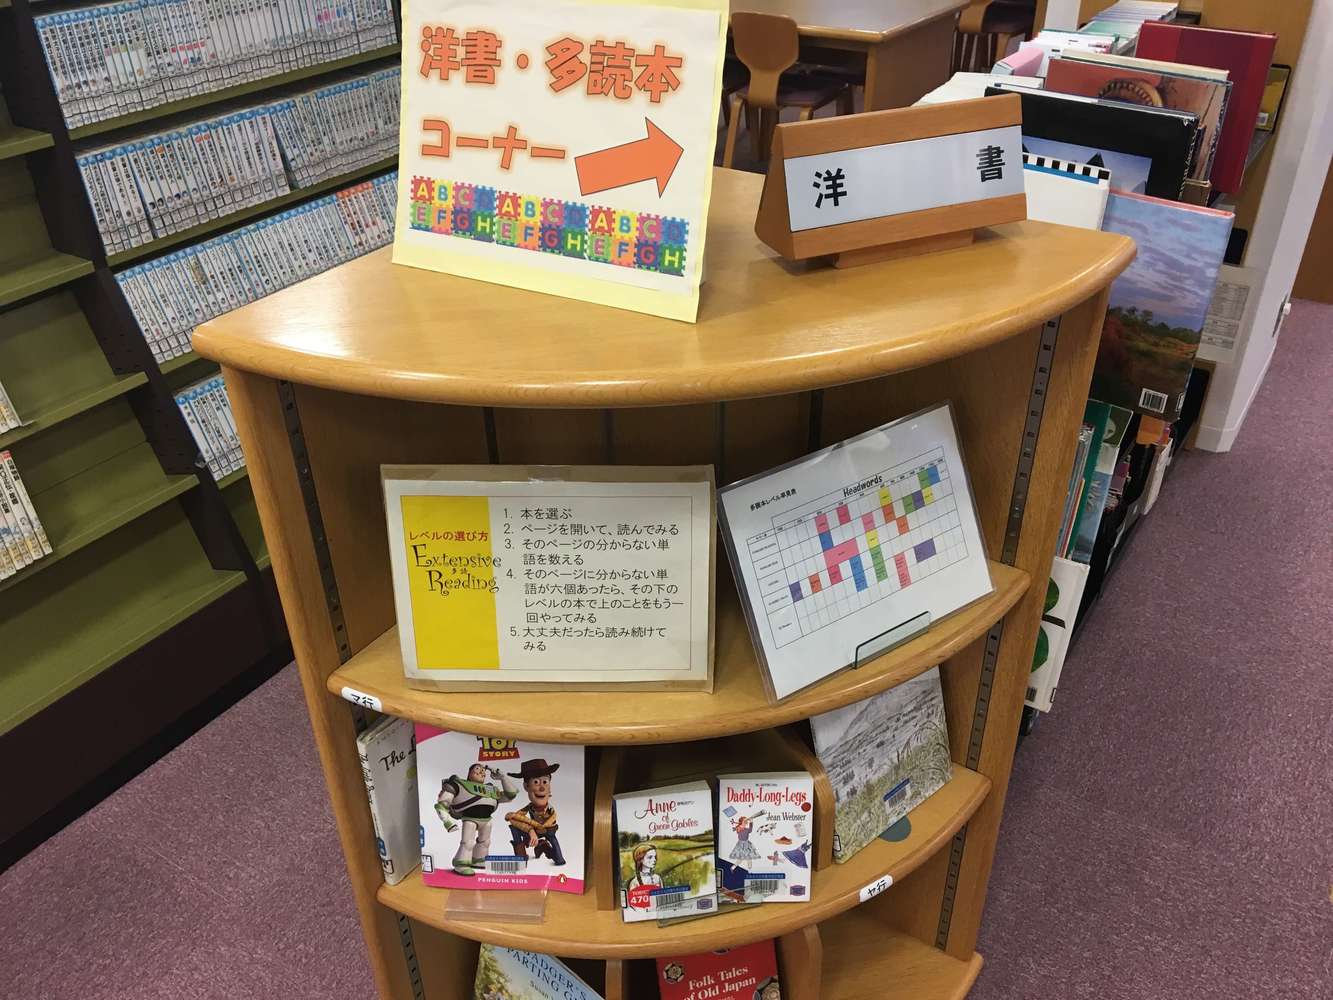 日本女子大学附属中学校　図書館司書インタビュー「生徒それぞれが意味を持って図書室に価値を見出してくれるように整えていければなと思っています」41